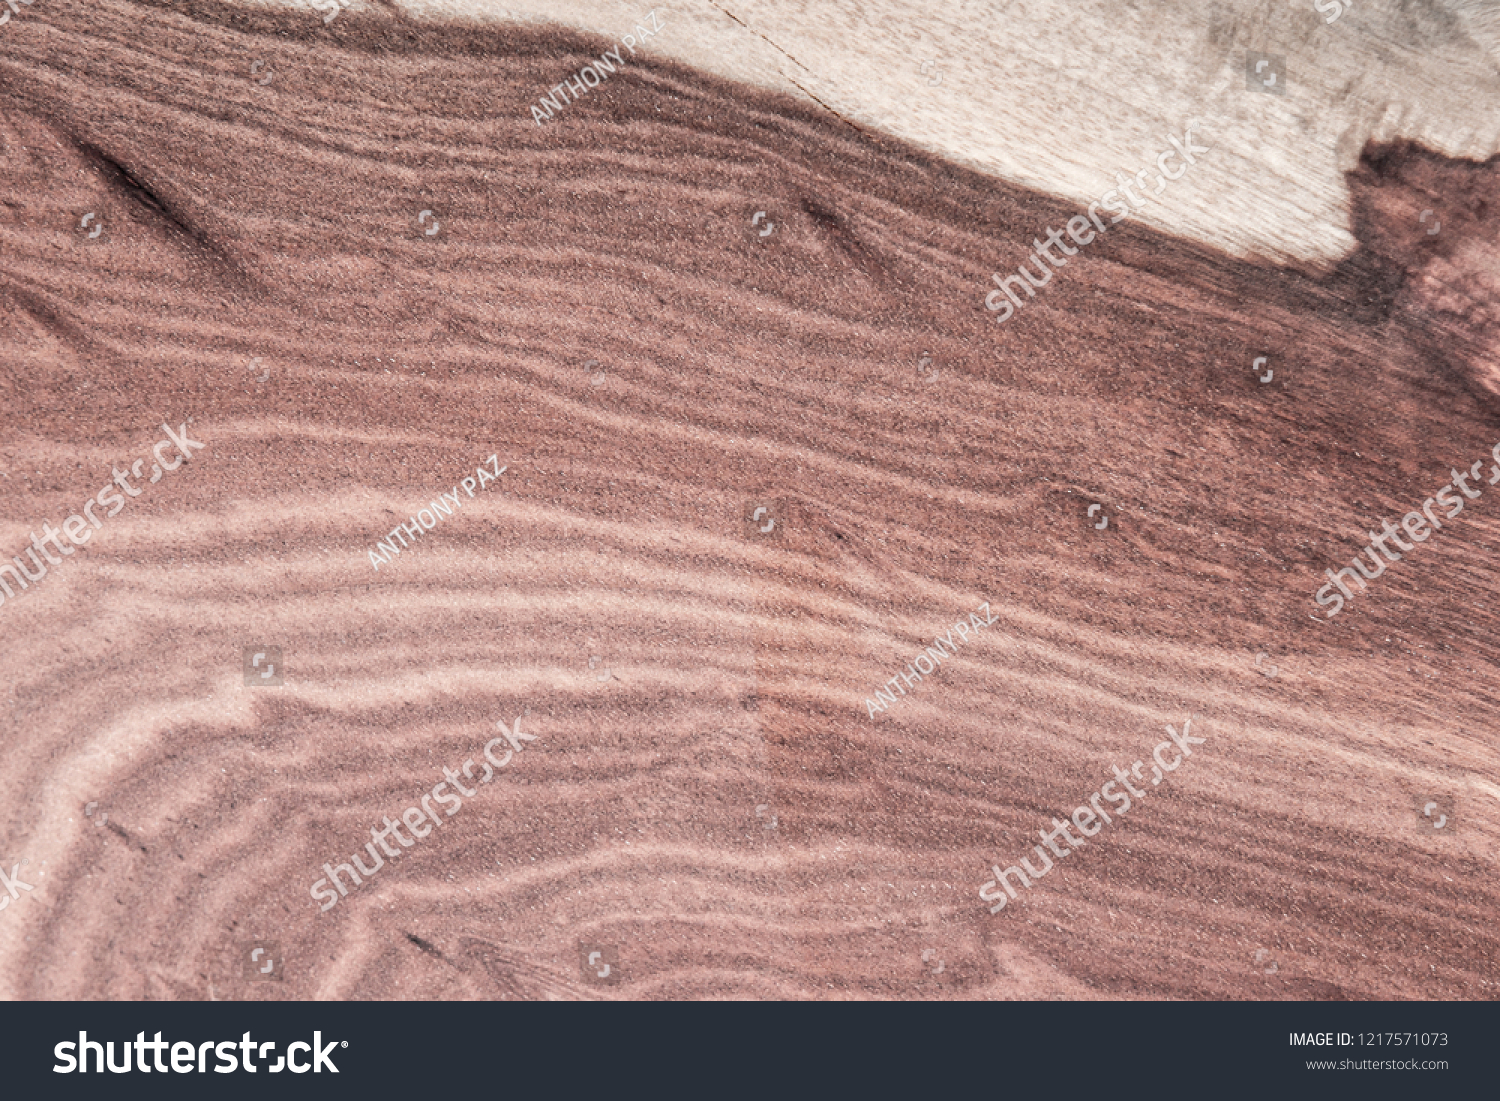 Wood - Material, Parquet Floor, Flooring, Hardwood, Textured Effect #1217571073